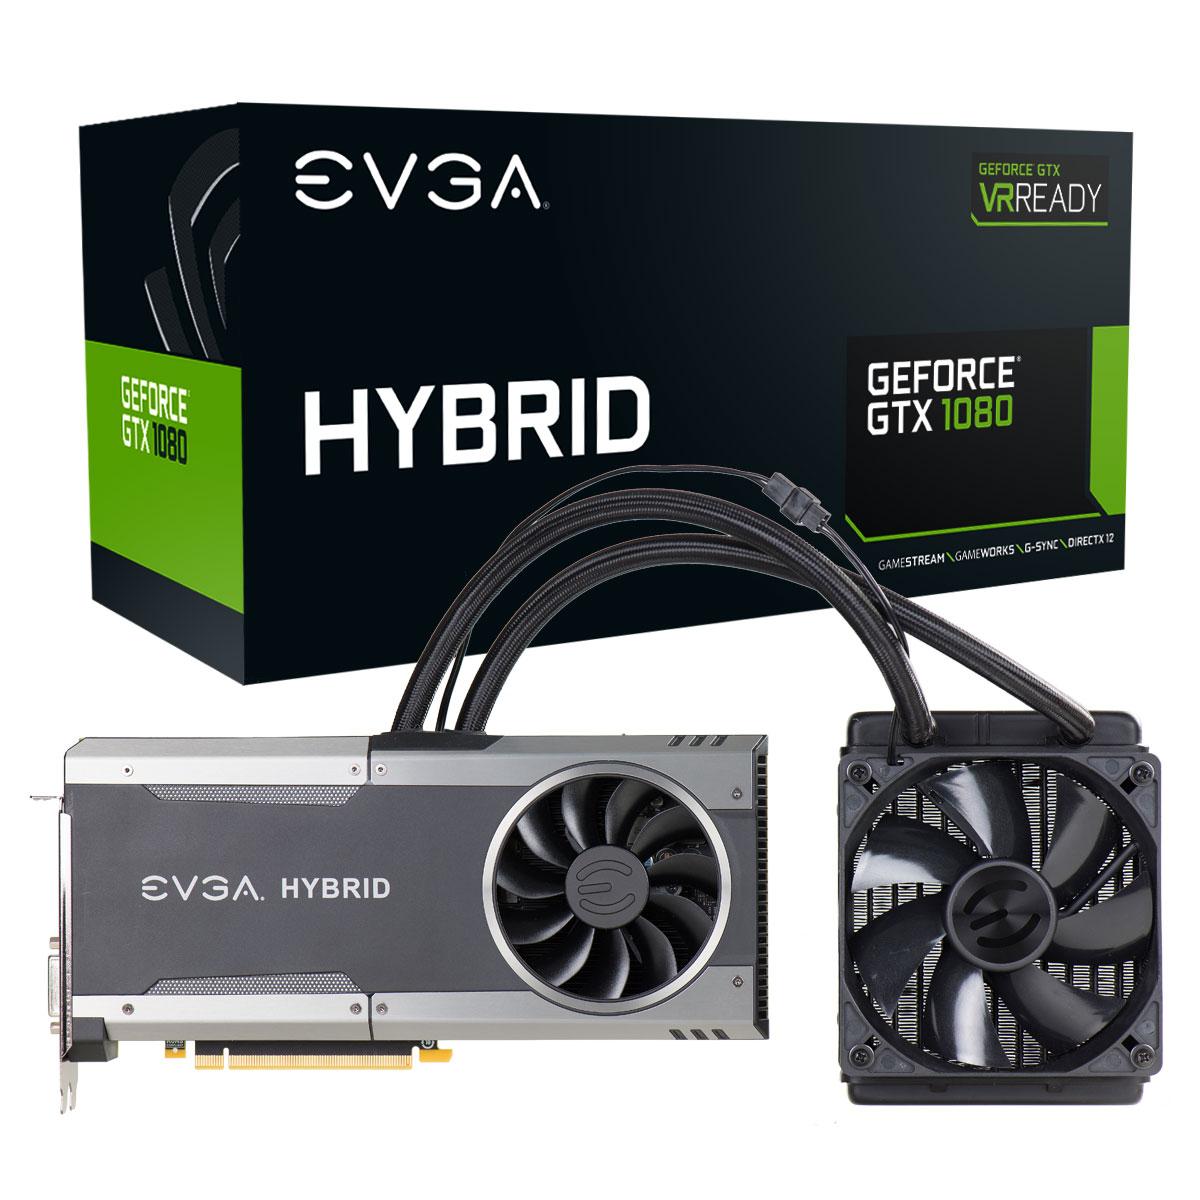 EVGA GeForce GTX 1080 8 GB FTW Hybrid Gaming